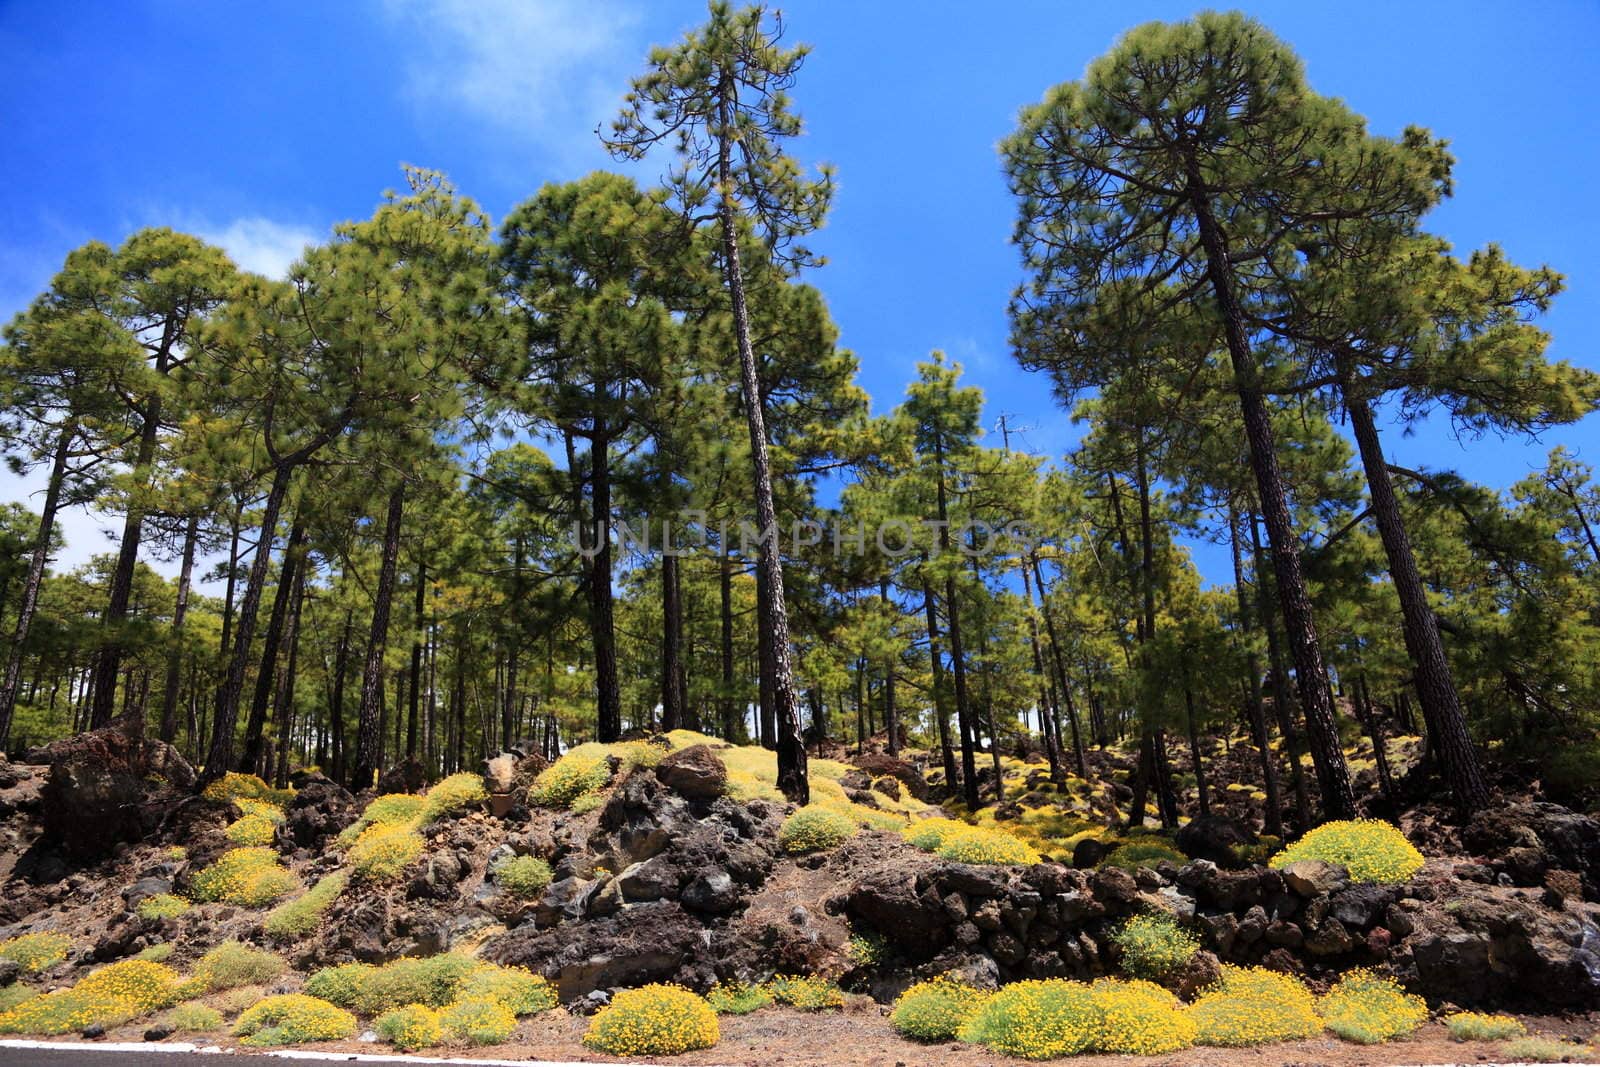 Tenerife forest landscape by Maridav